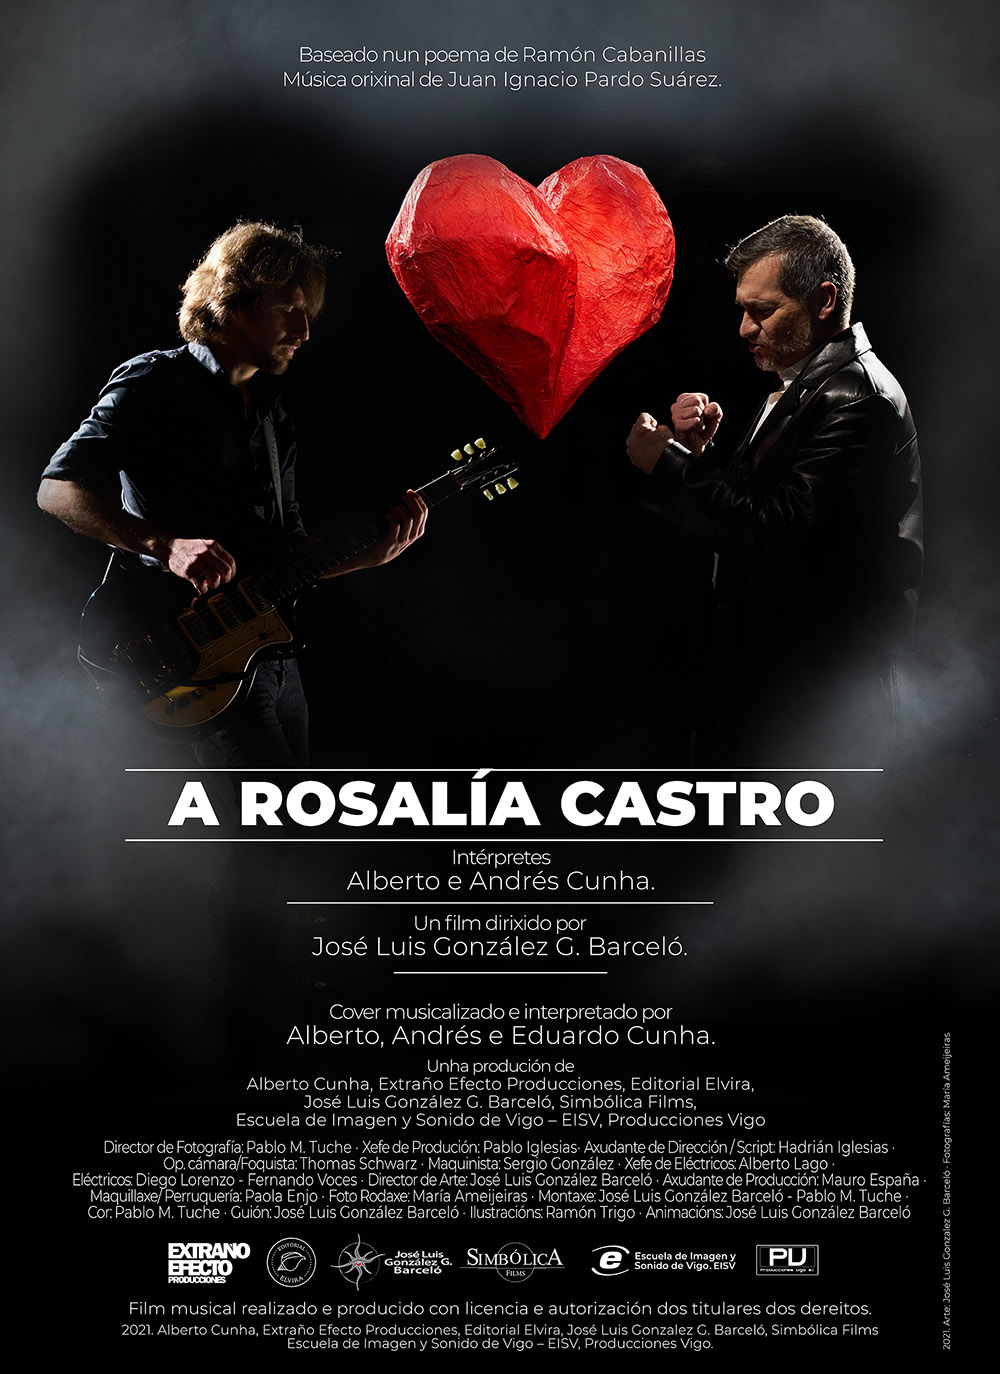 EISV videoclip A Rosalía Castro de Alberto Cunha dirigido por José Luis González Barceló